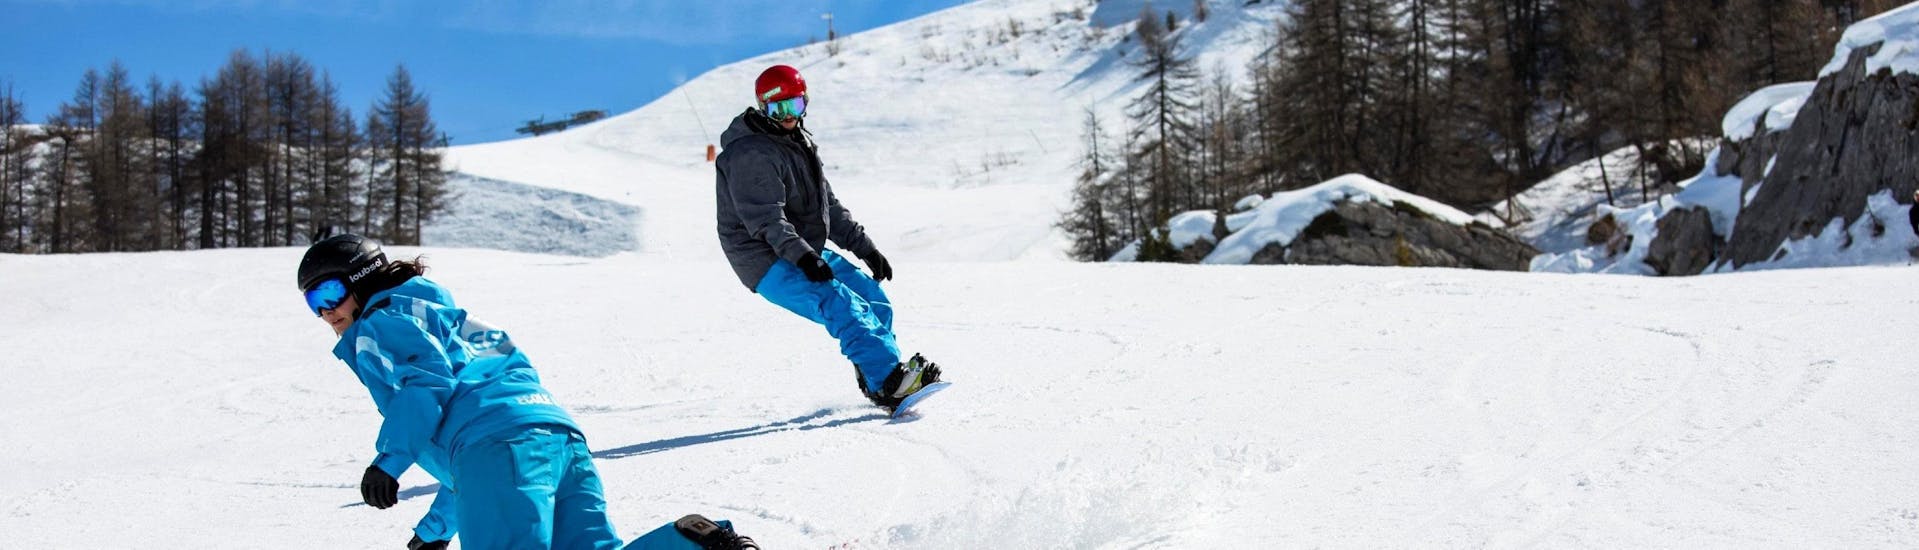 Lezioni private di Snowboard a partire da 8 anni.